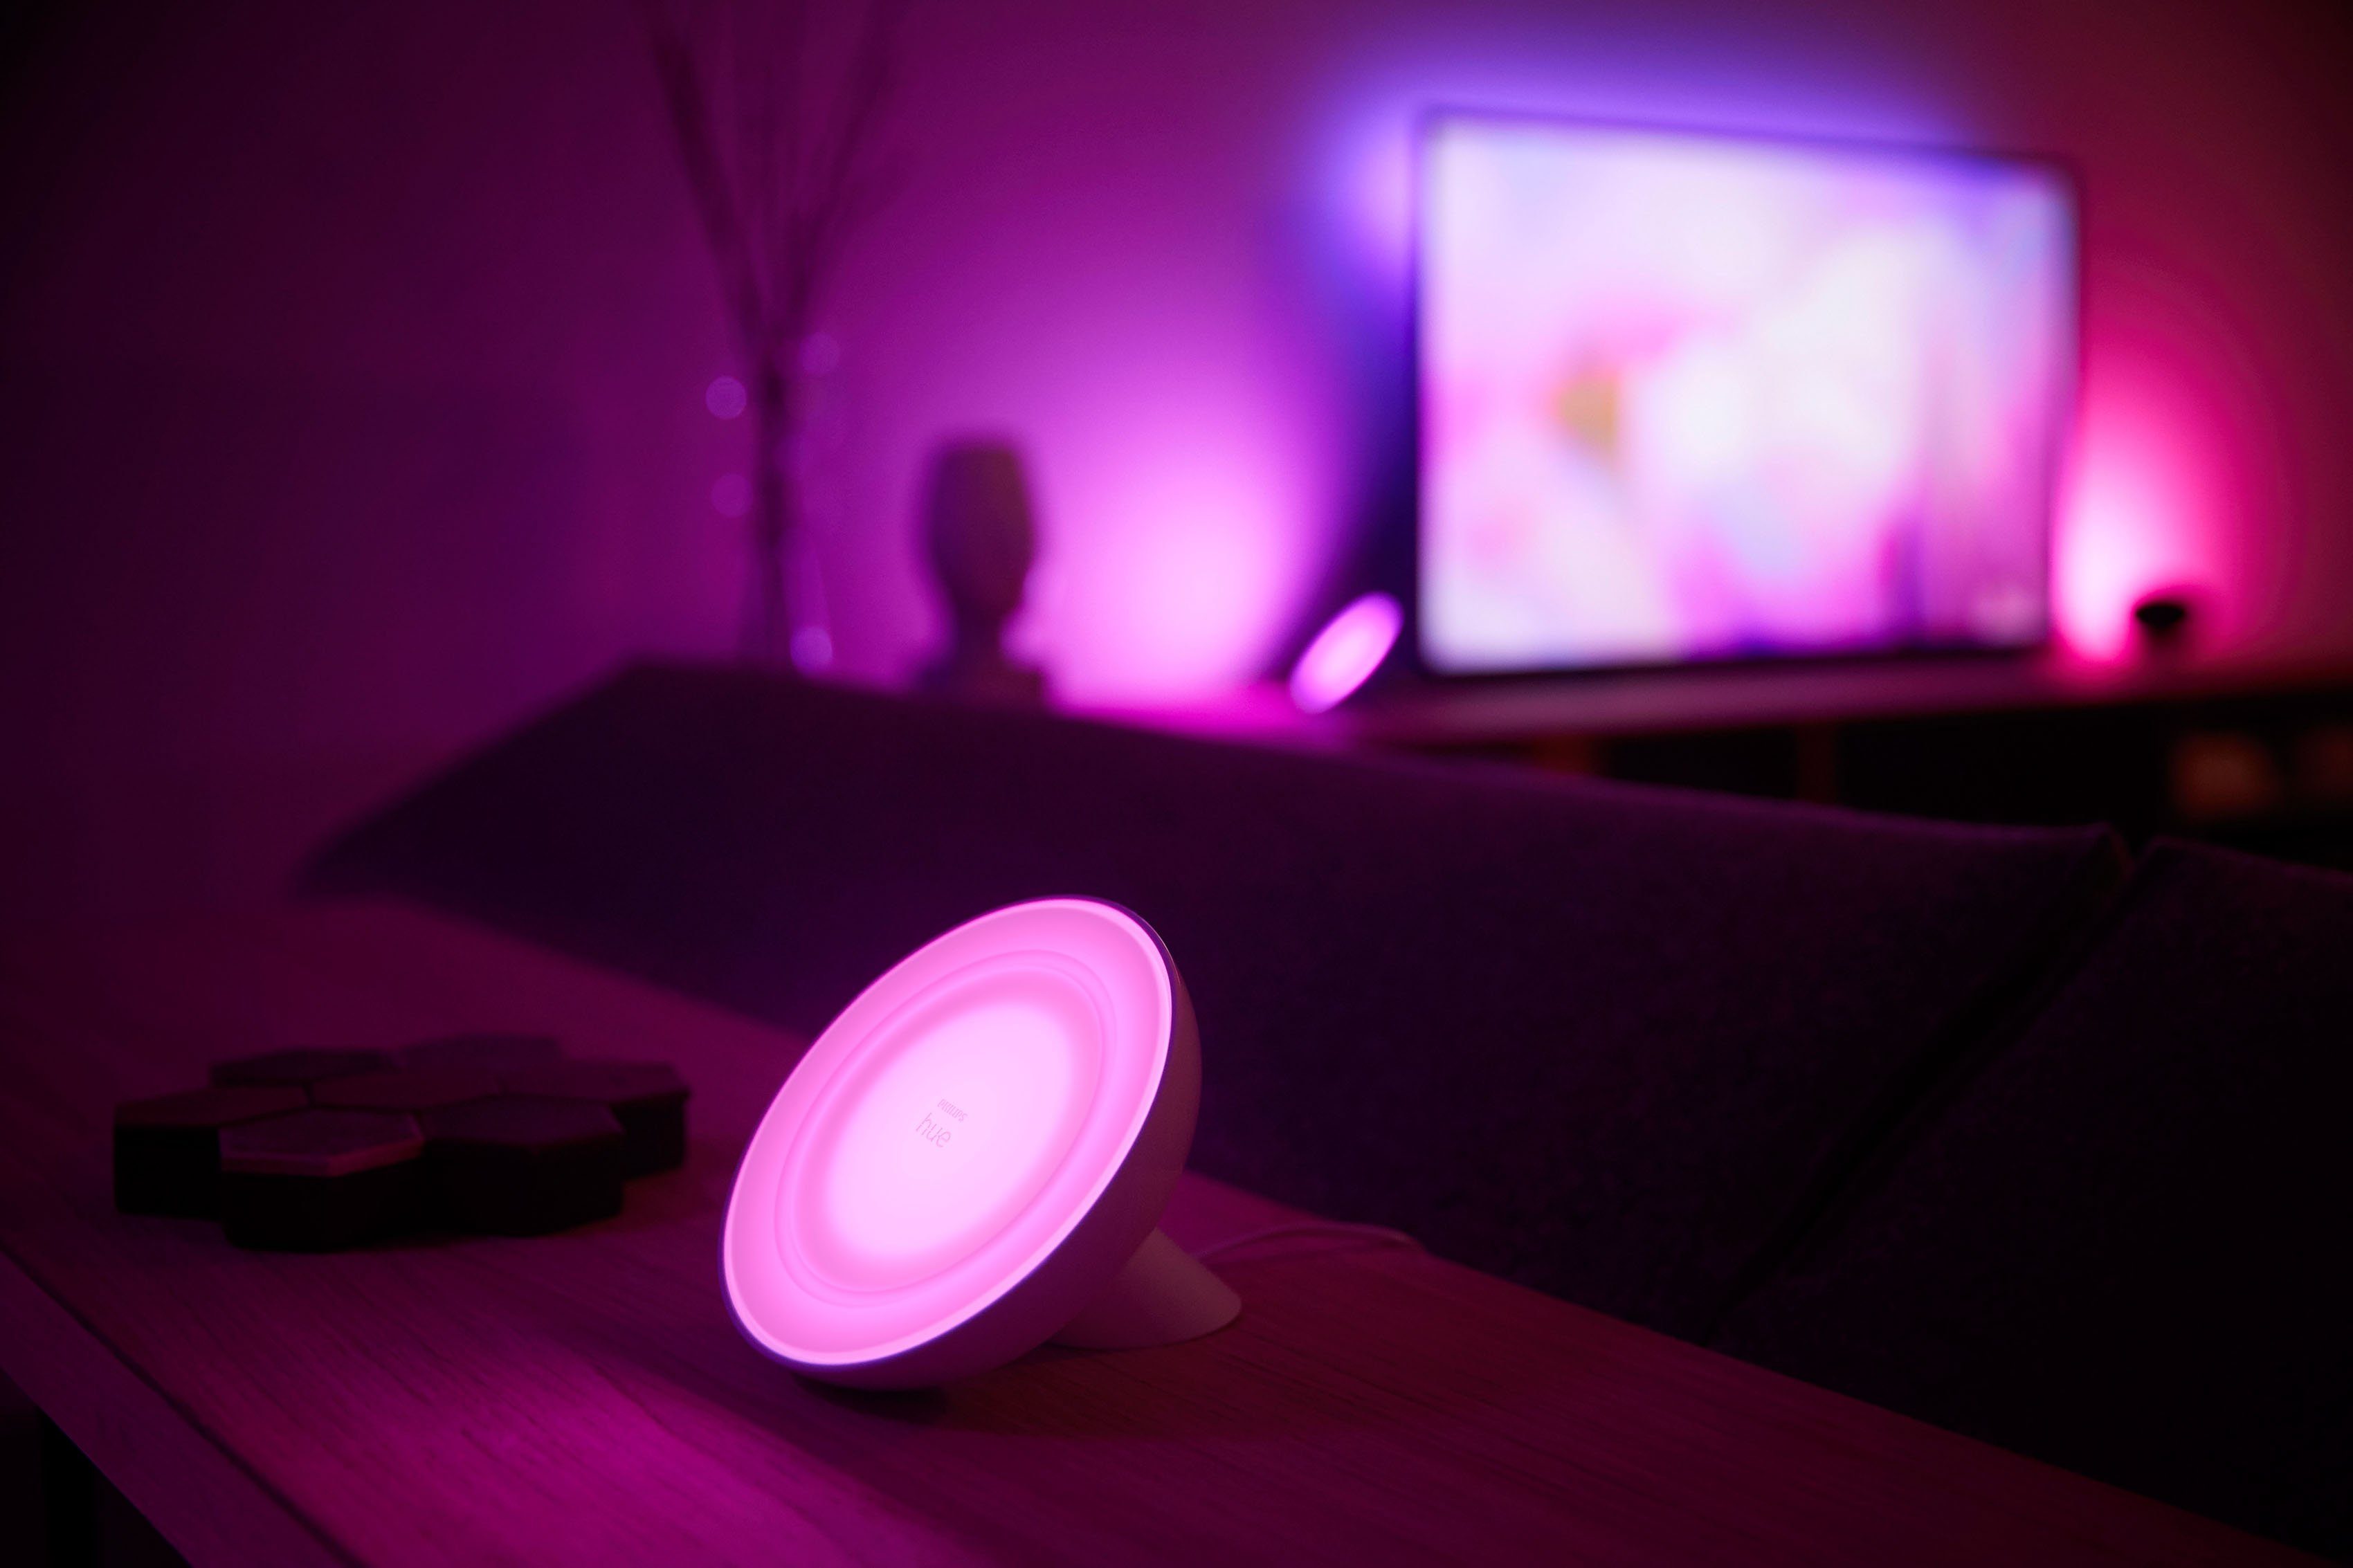 LED Lumen LED Dimmfunktion, Philips Bluetooth, Hue integriert, fest Home, Tischleuchte, Warmweiß, Bloom, Kaltweiß, LED Neutralweiß, Ein-/Ausschalter, Smart Tischleuchte Farbwechsler, Farbsteuerung, 500 weiß,